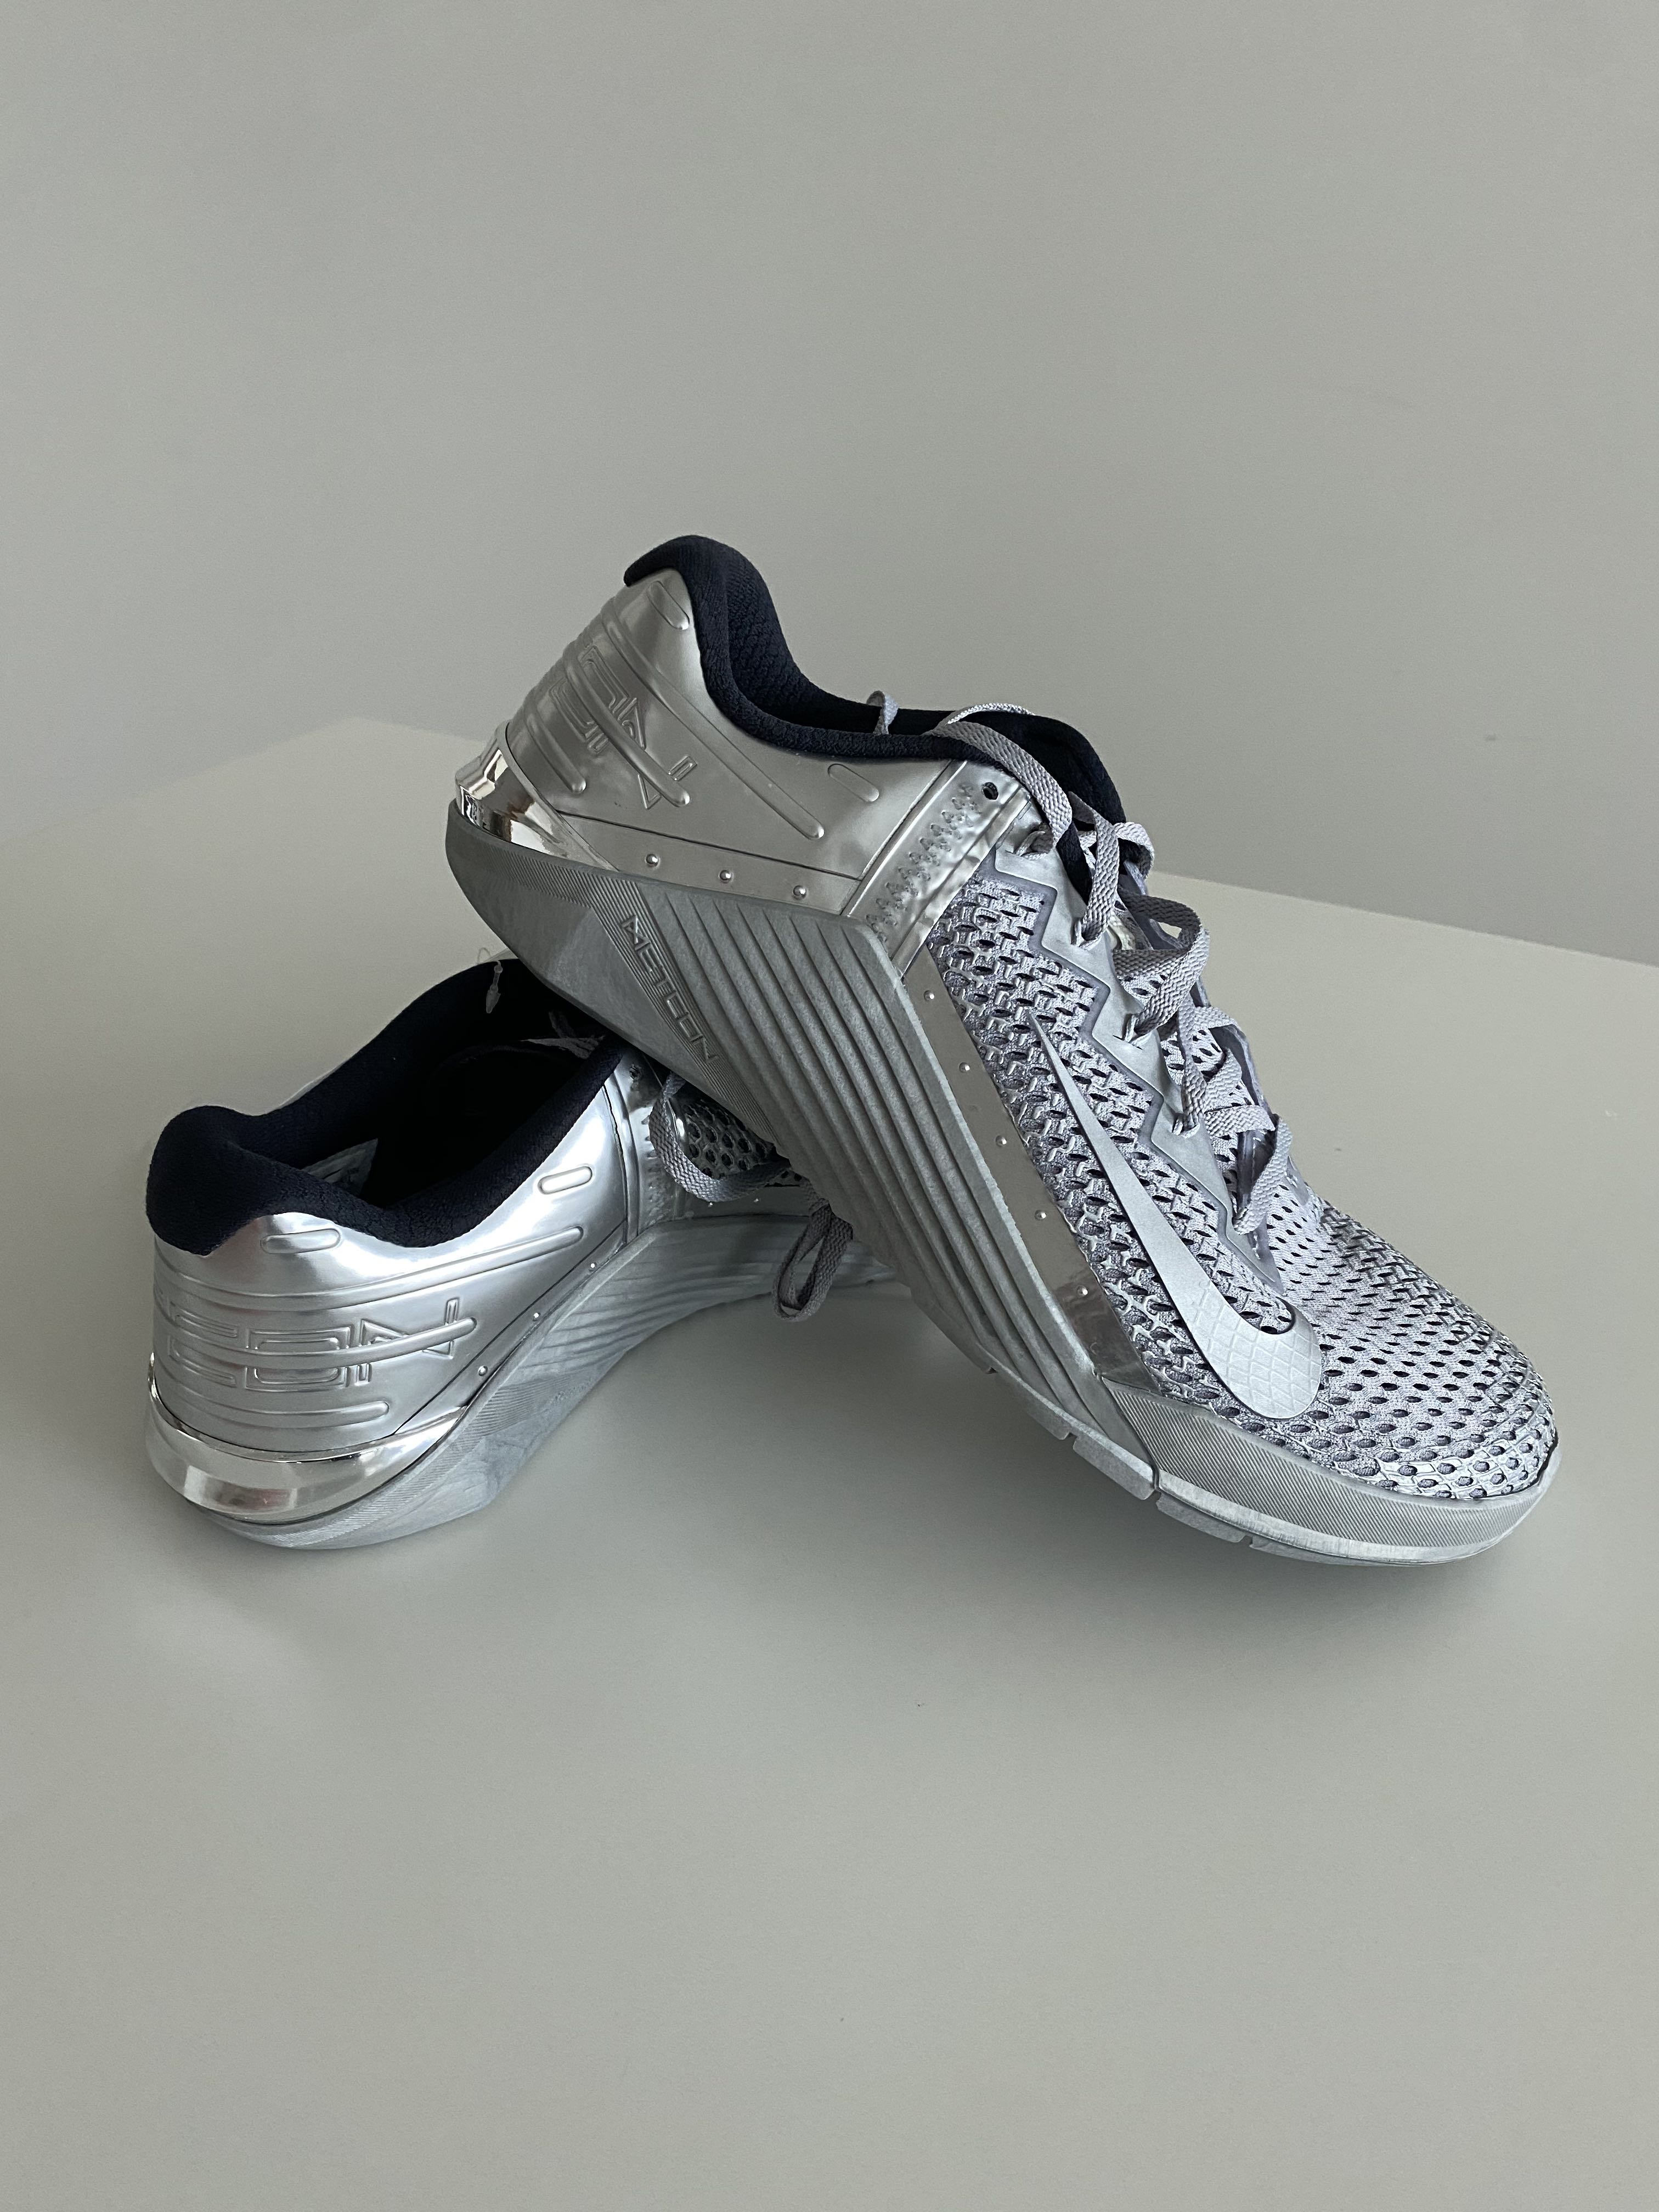 NIKE Metcon 6 Premium Training Shoes in 